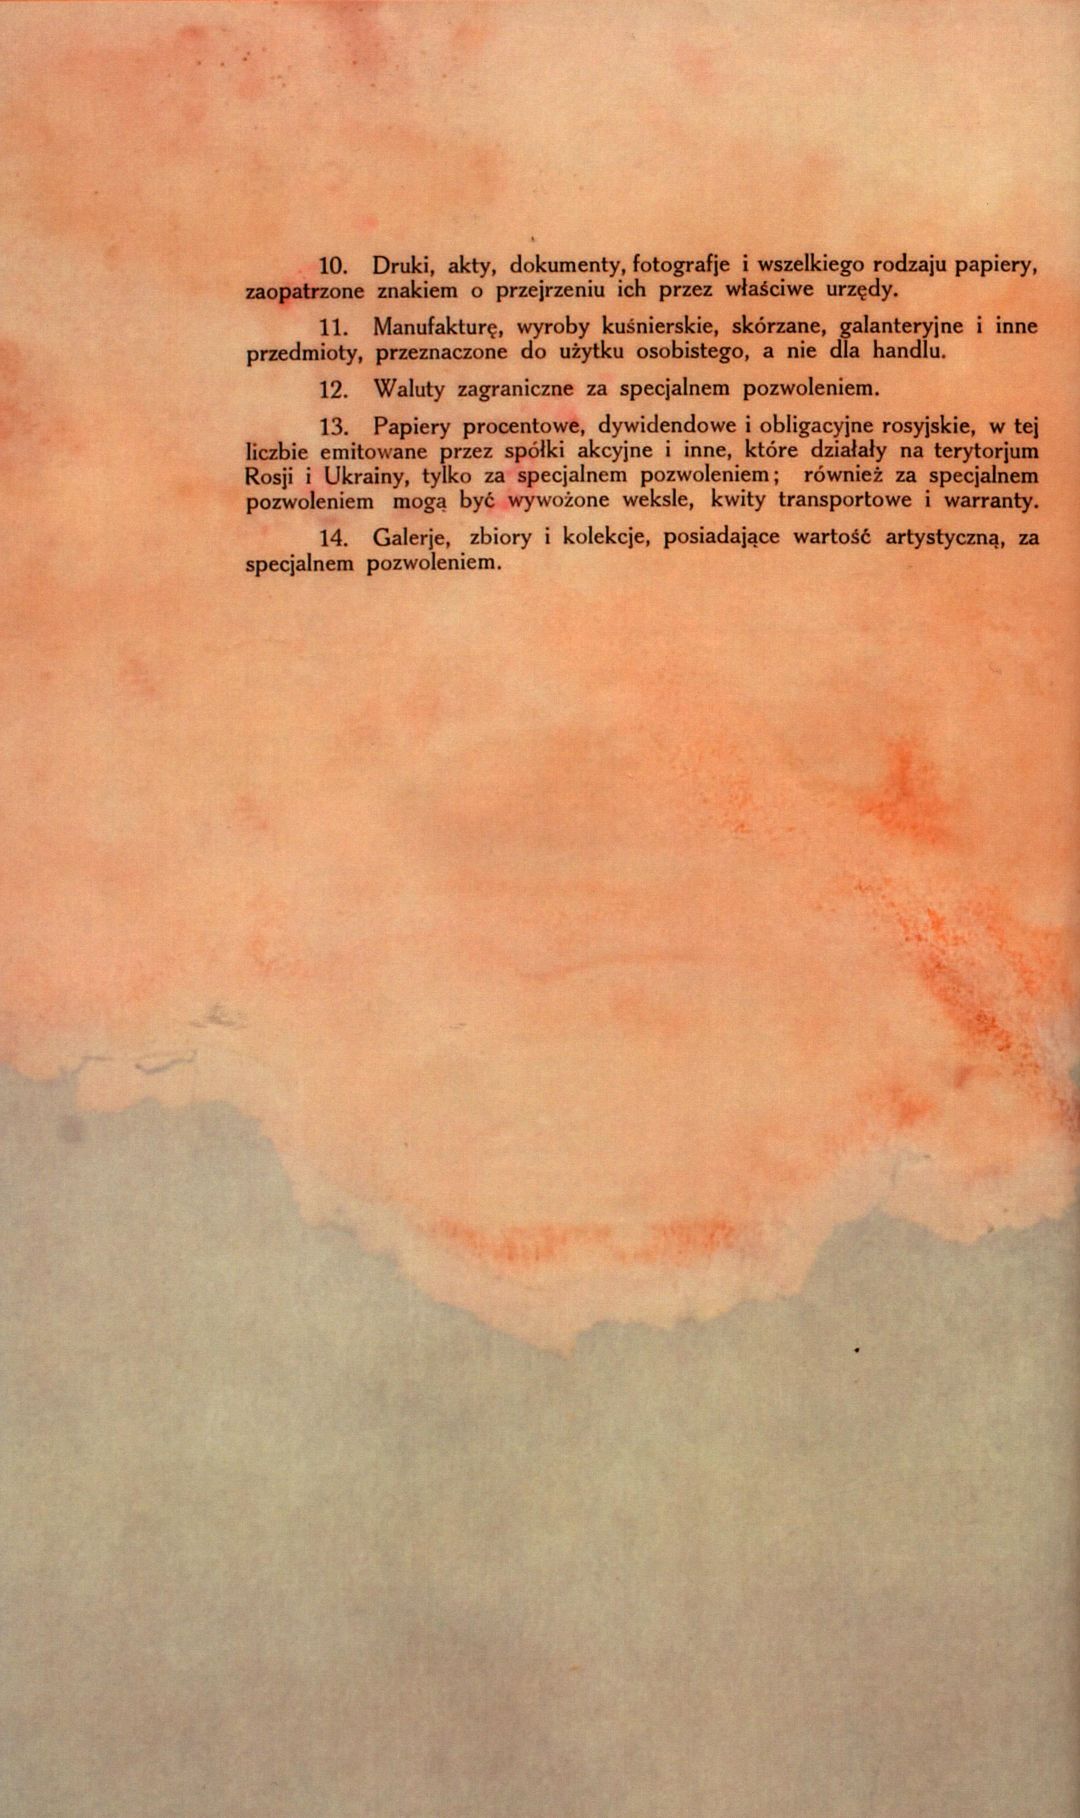 Traktat Pokoju między Polską a Rosją i Ukrainą podpisany w Rydze dnia 18 marca 1921 roku, s. 25, MSZ, sygn. 6739.